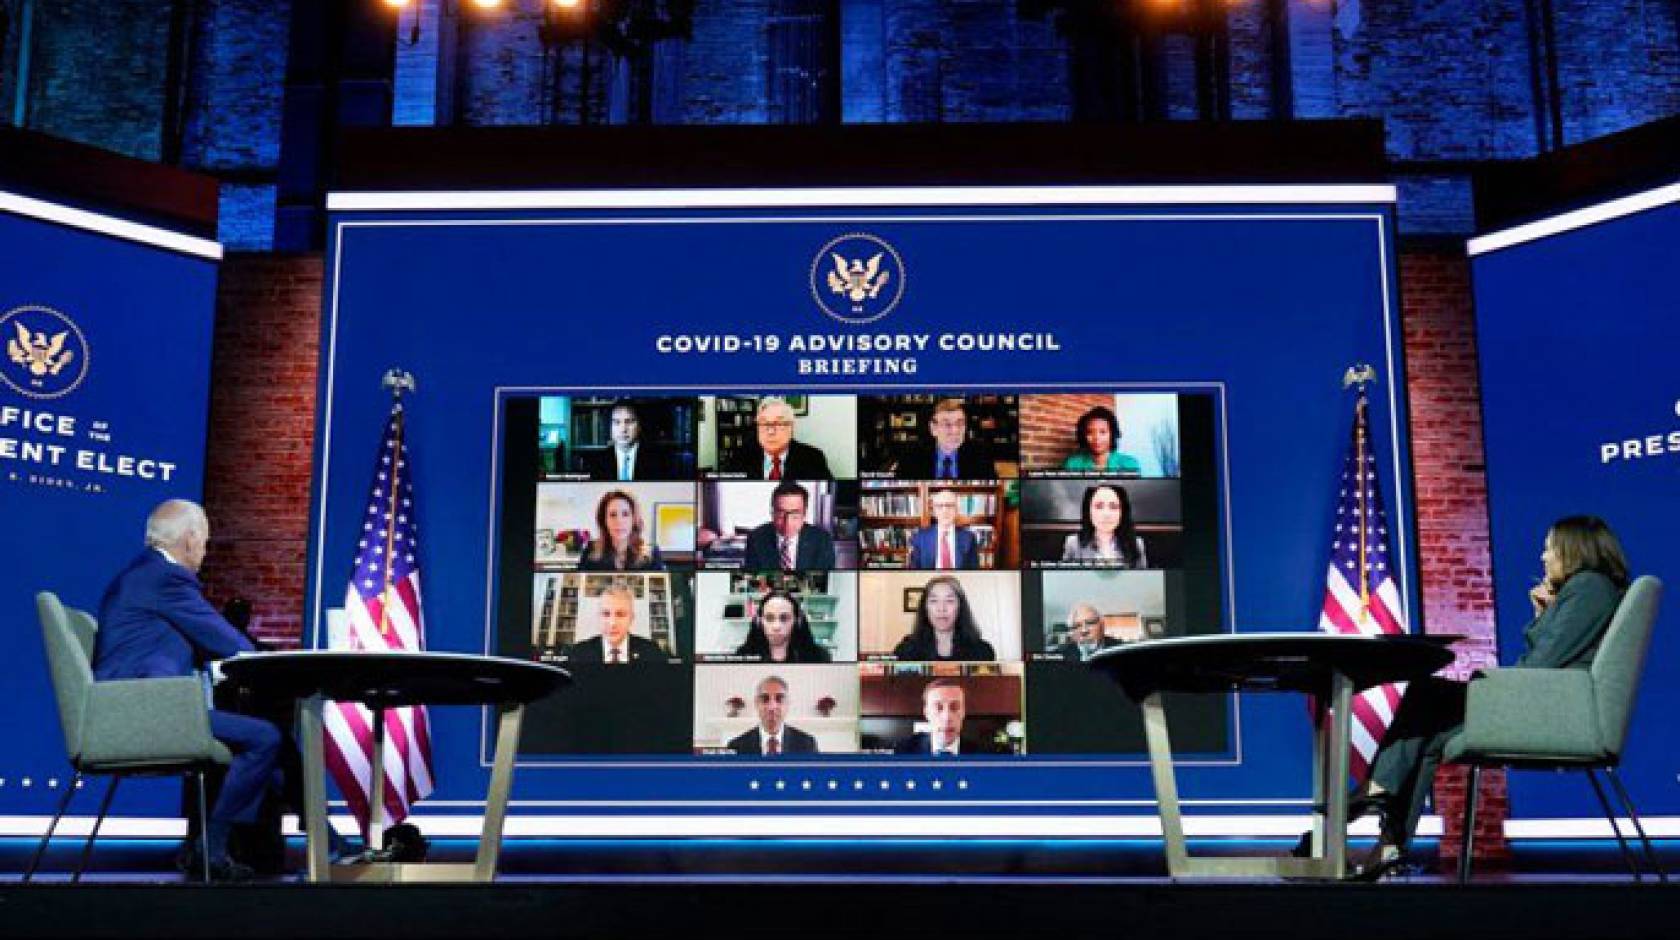 Joe Biden and Kamala Harris in a virtual meeting on COVID-19